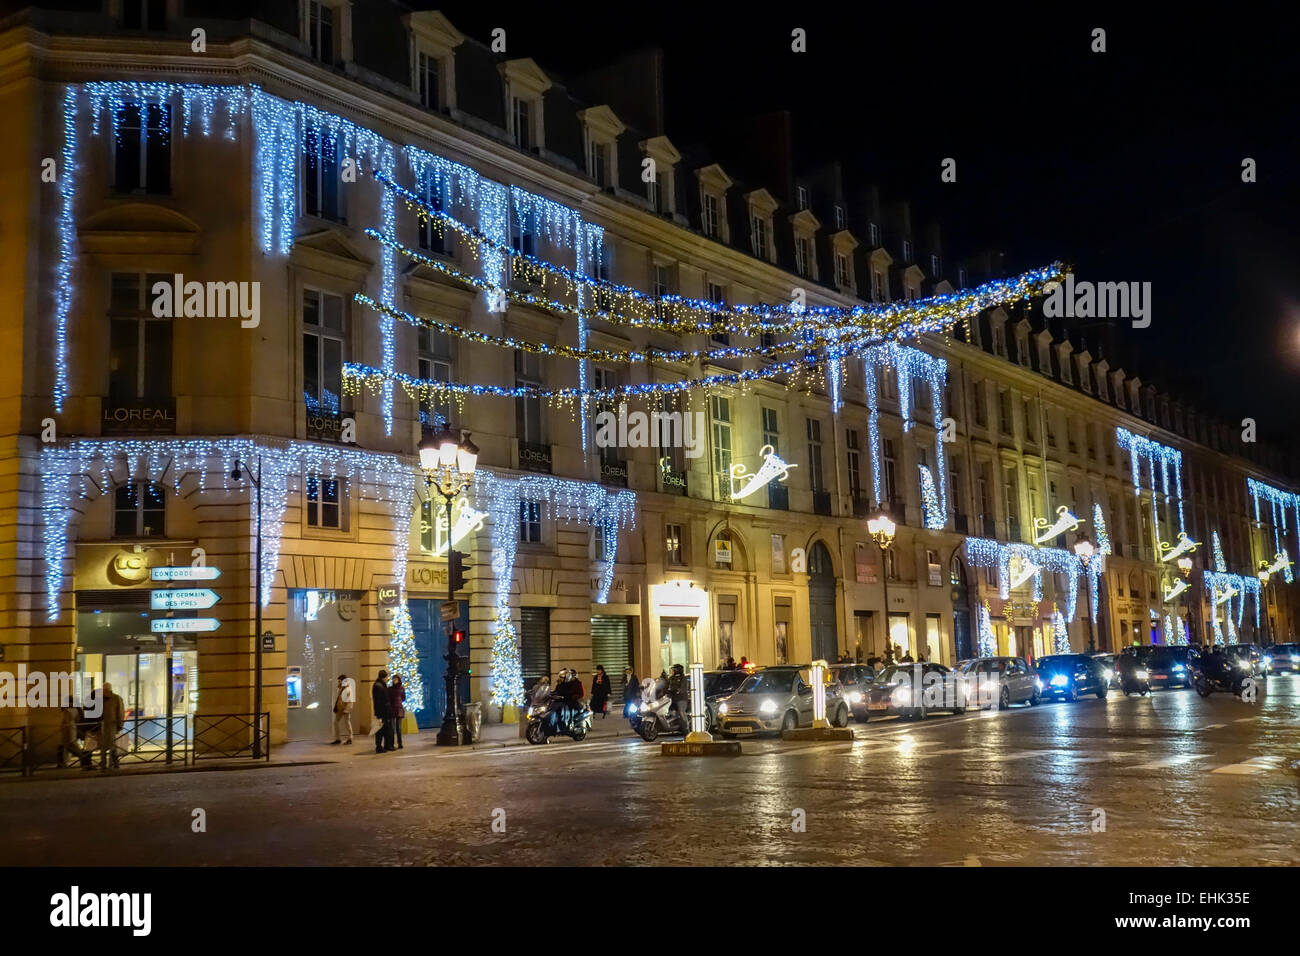 Christmas street lighting on Rue Royale, Paris Stock Photo